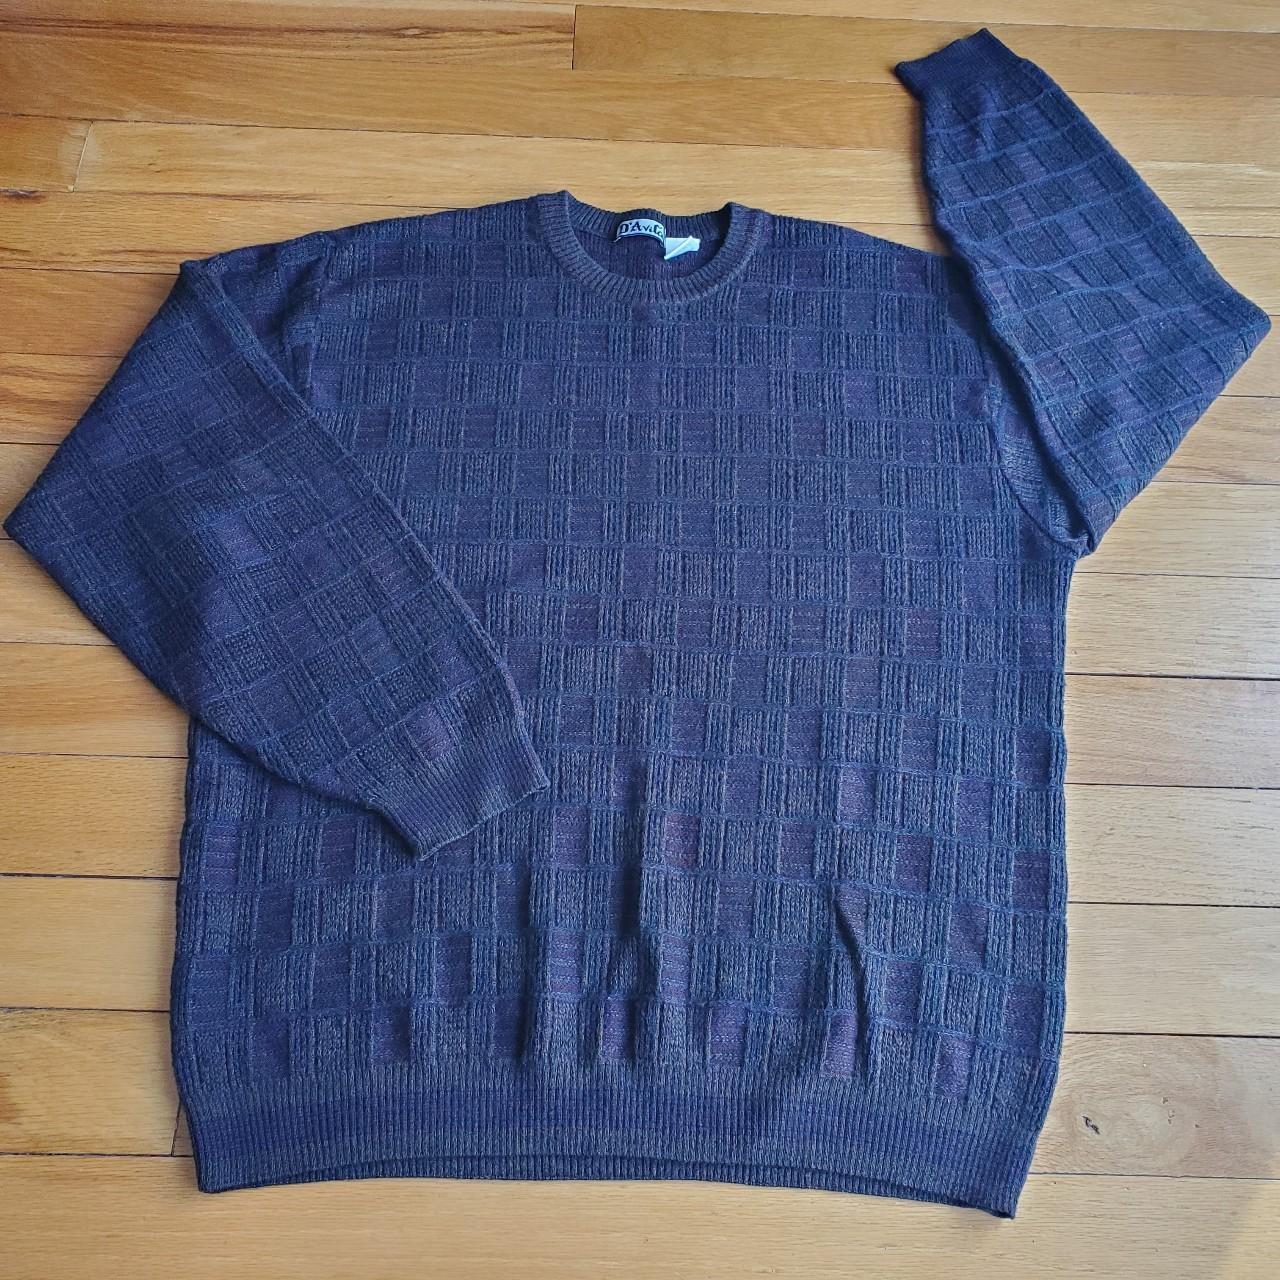 Vintage Grandpa Sweater Men's XL cute oversized fit... - Depop